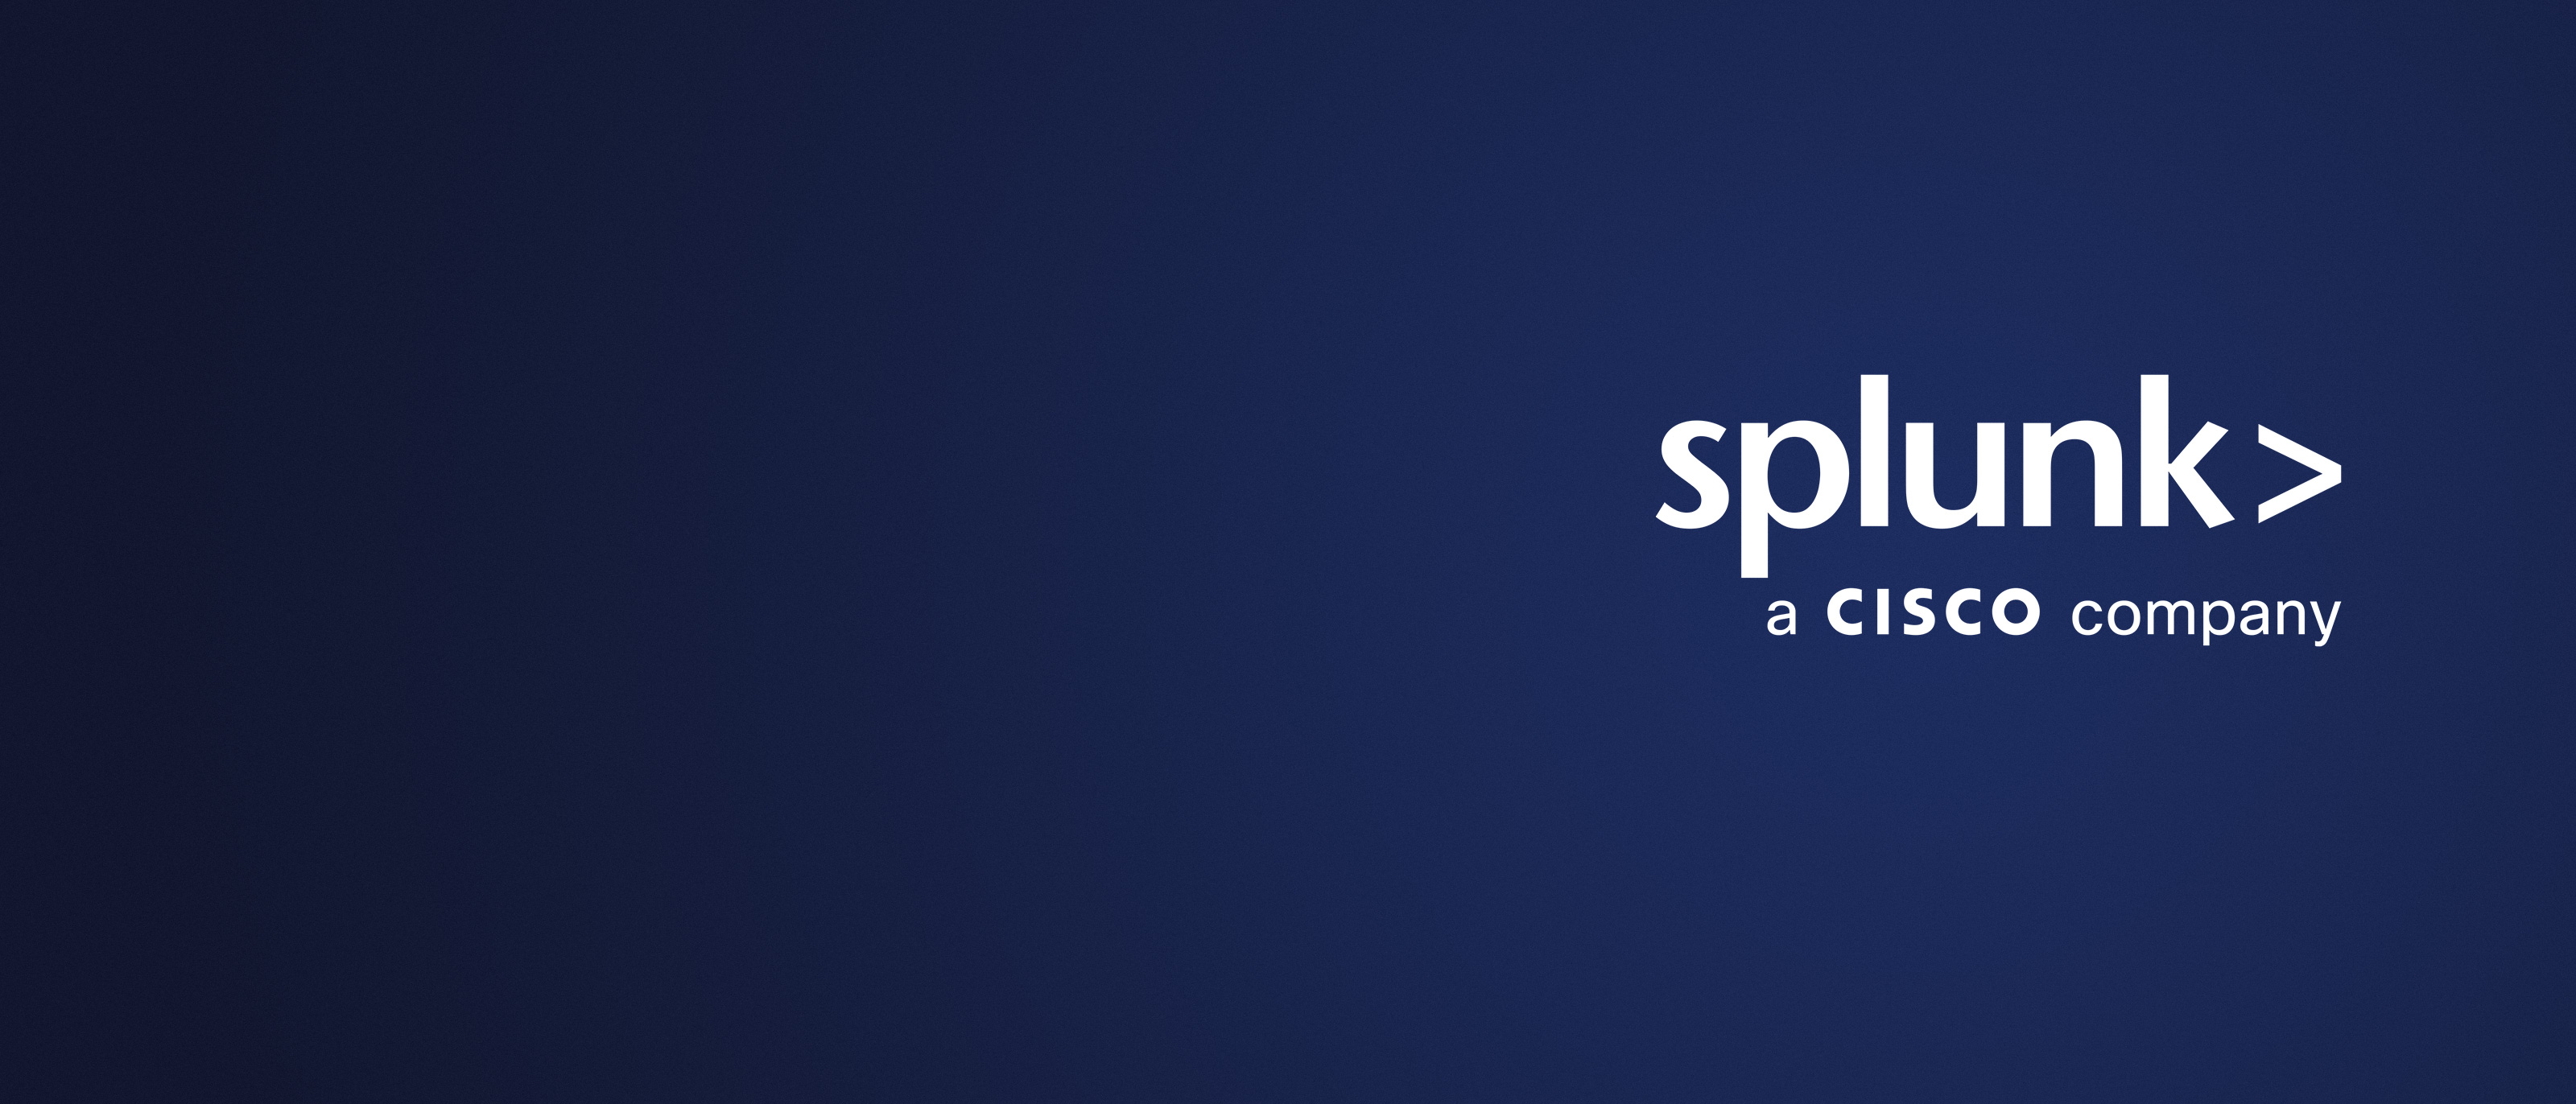 Splunk appartient désormais à Cisco. Préparez-vous à profiter des avantages.